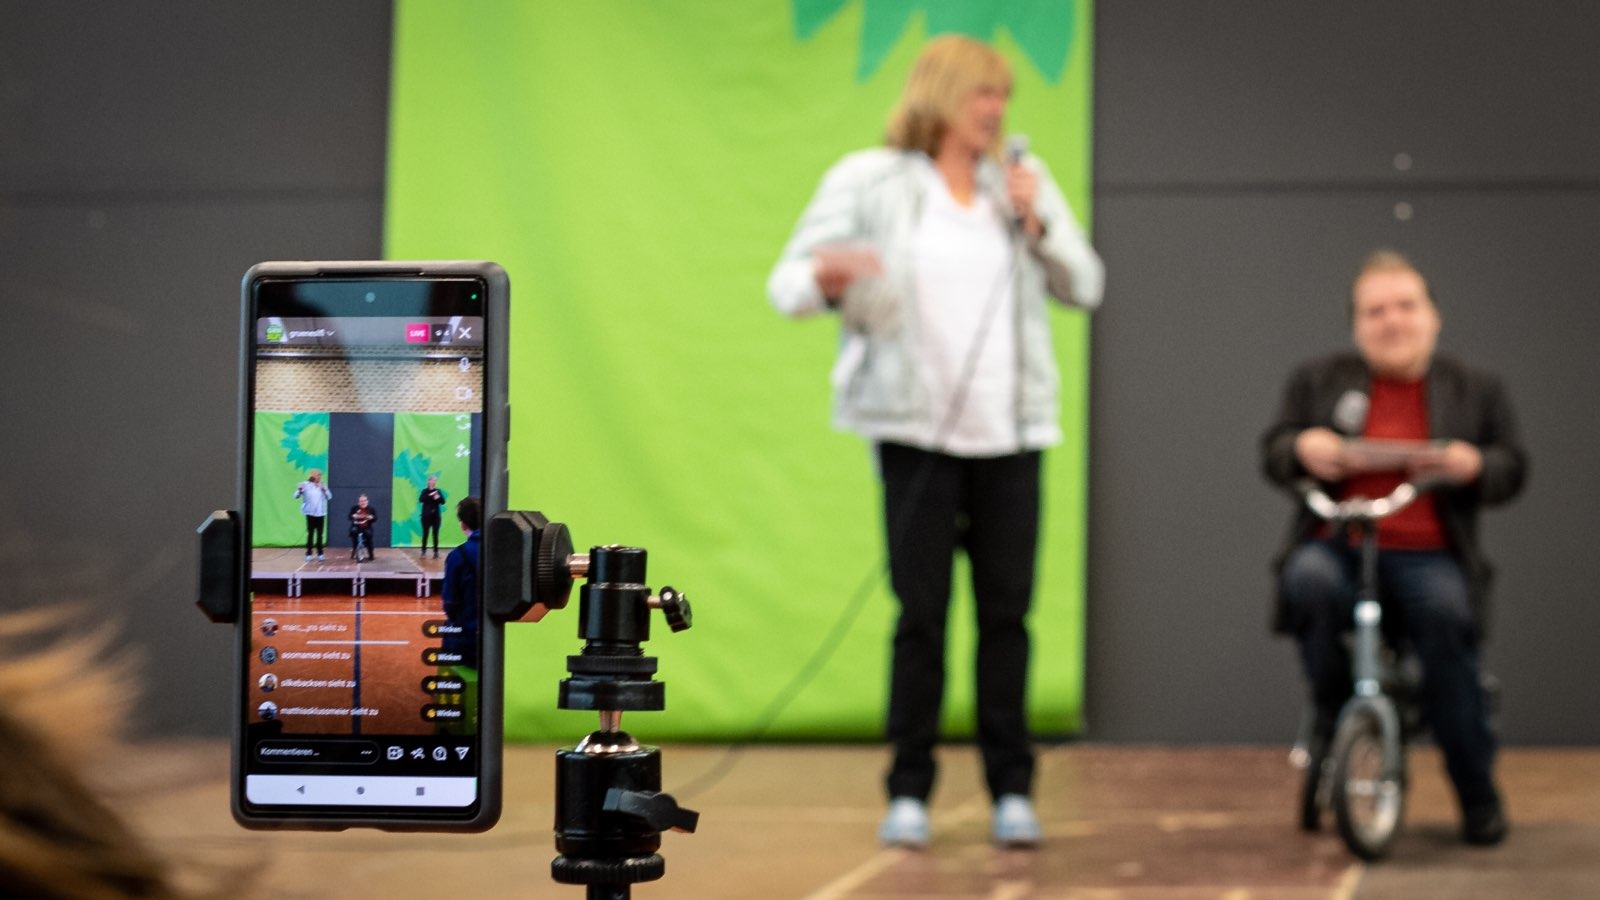 Im Vordergrund ein Handy auf Stativ, welches im Hintergrund zwei Menschen auf der Bühne filmt.